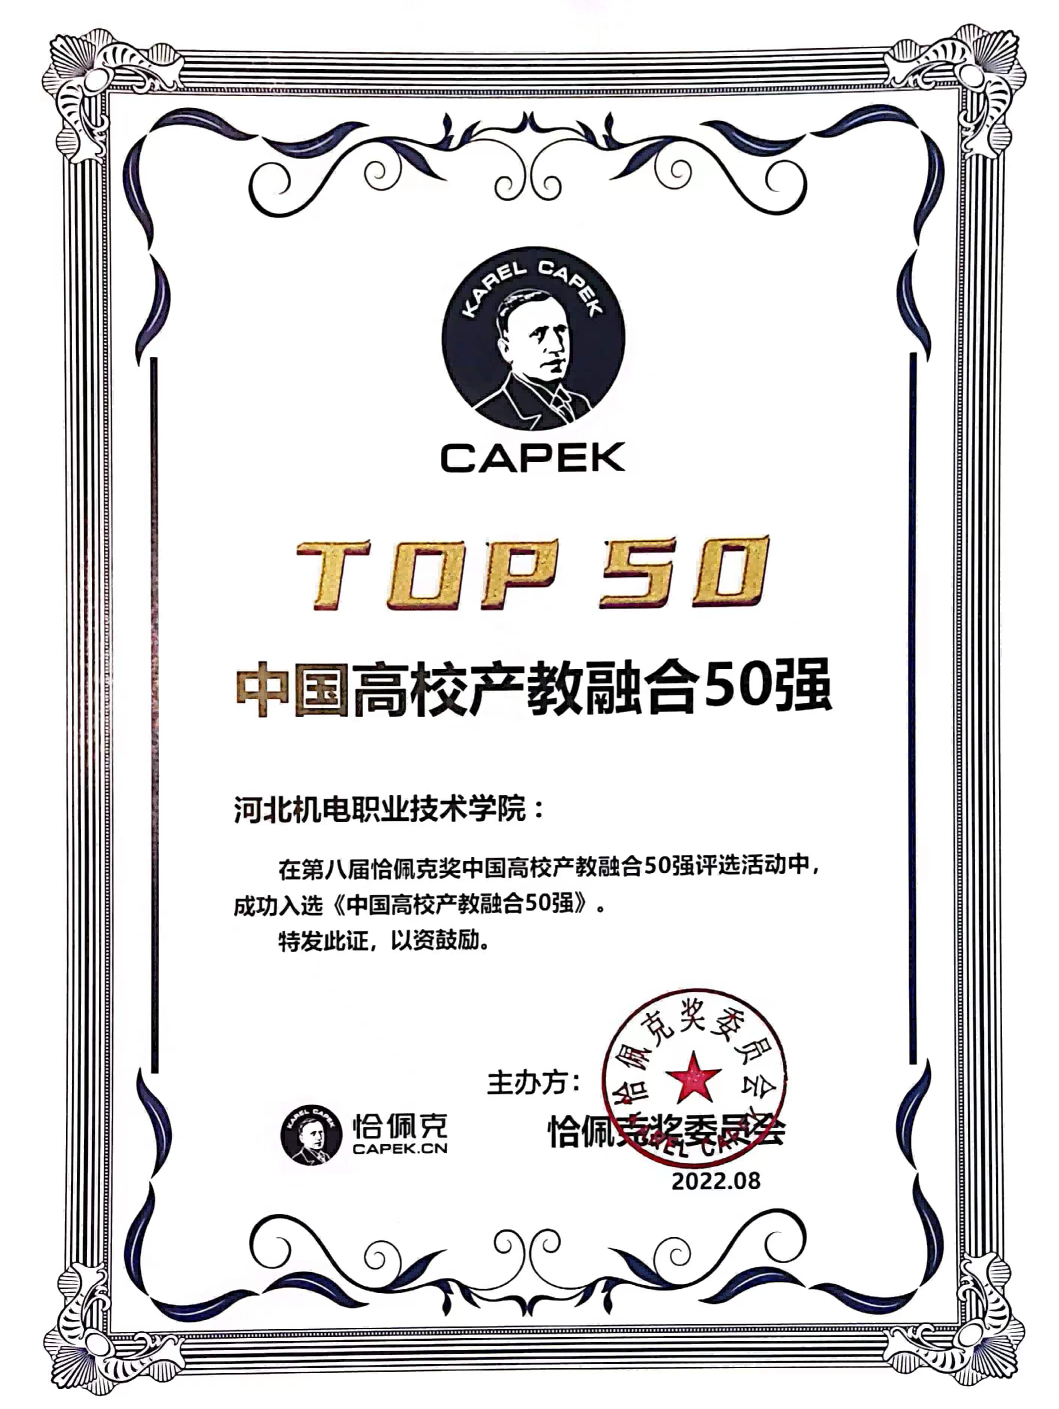 我院荣获第八届恰佩克奖“中国高校产教融合50强”